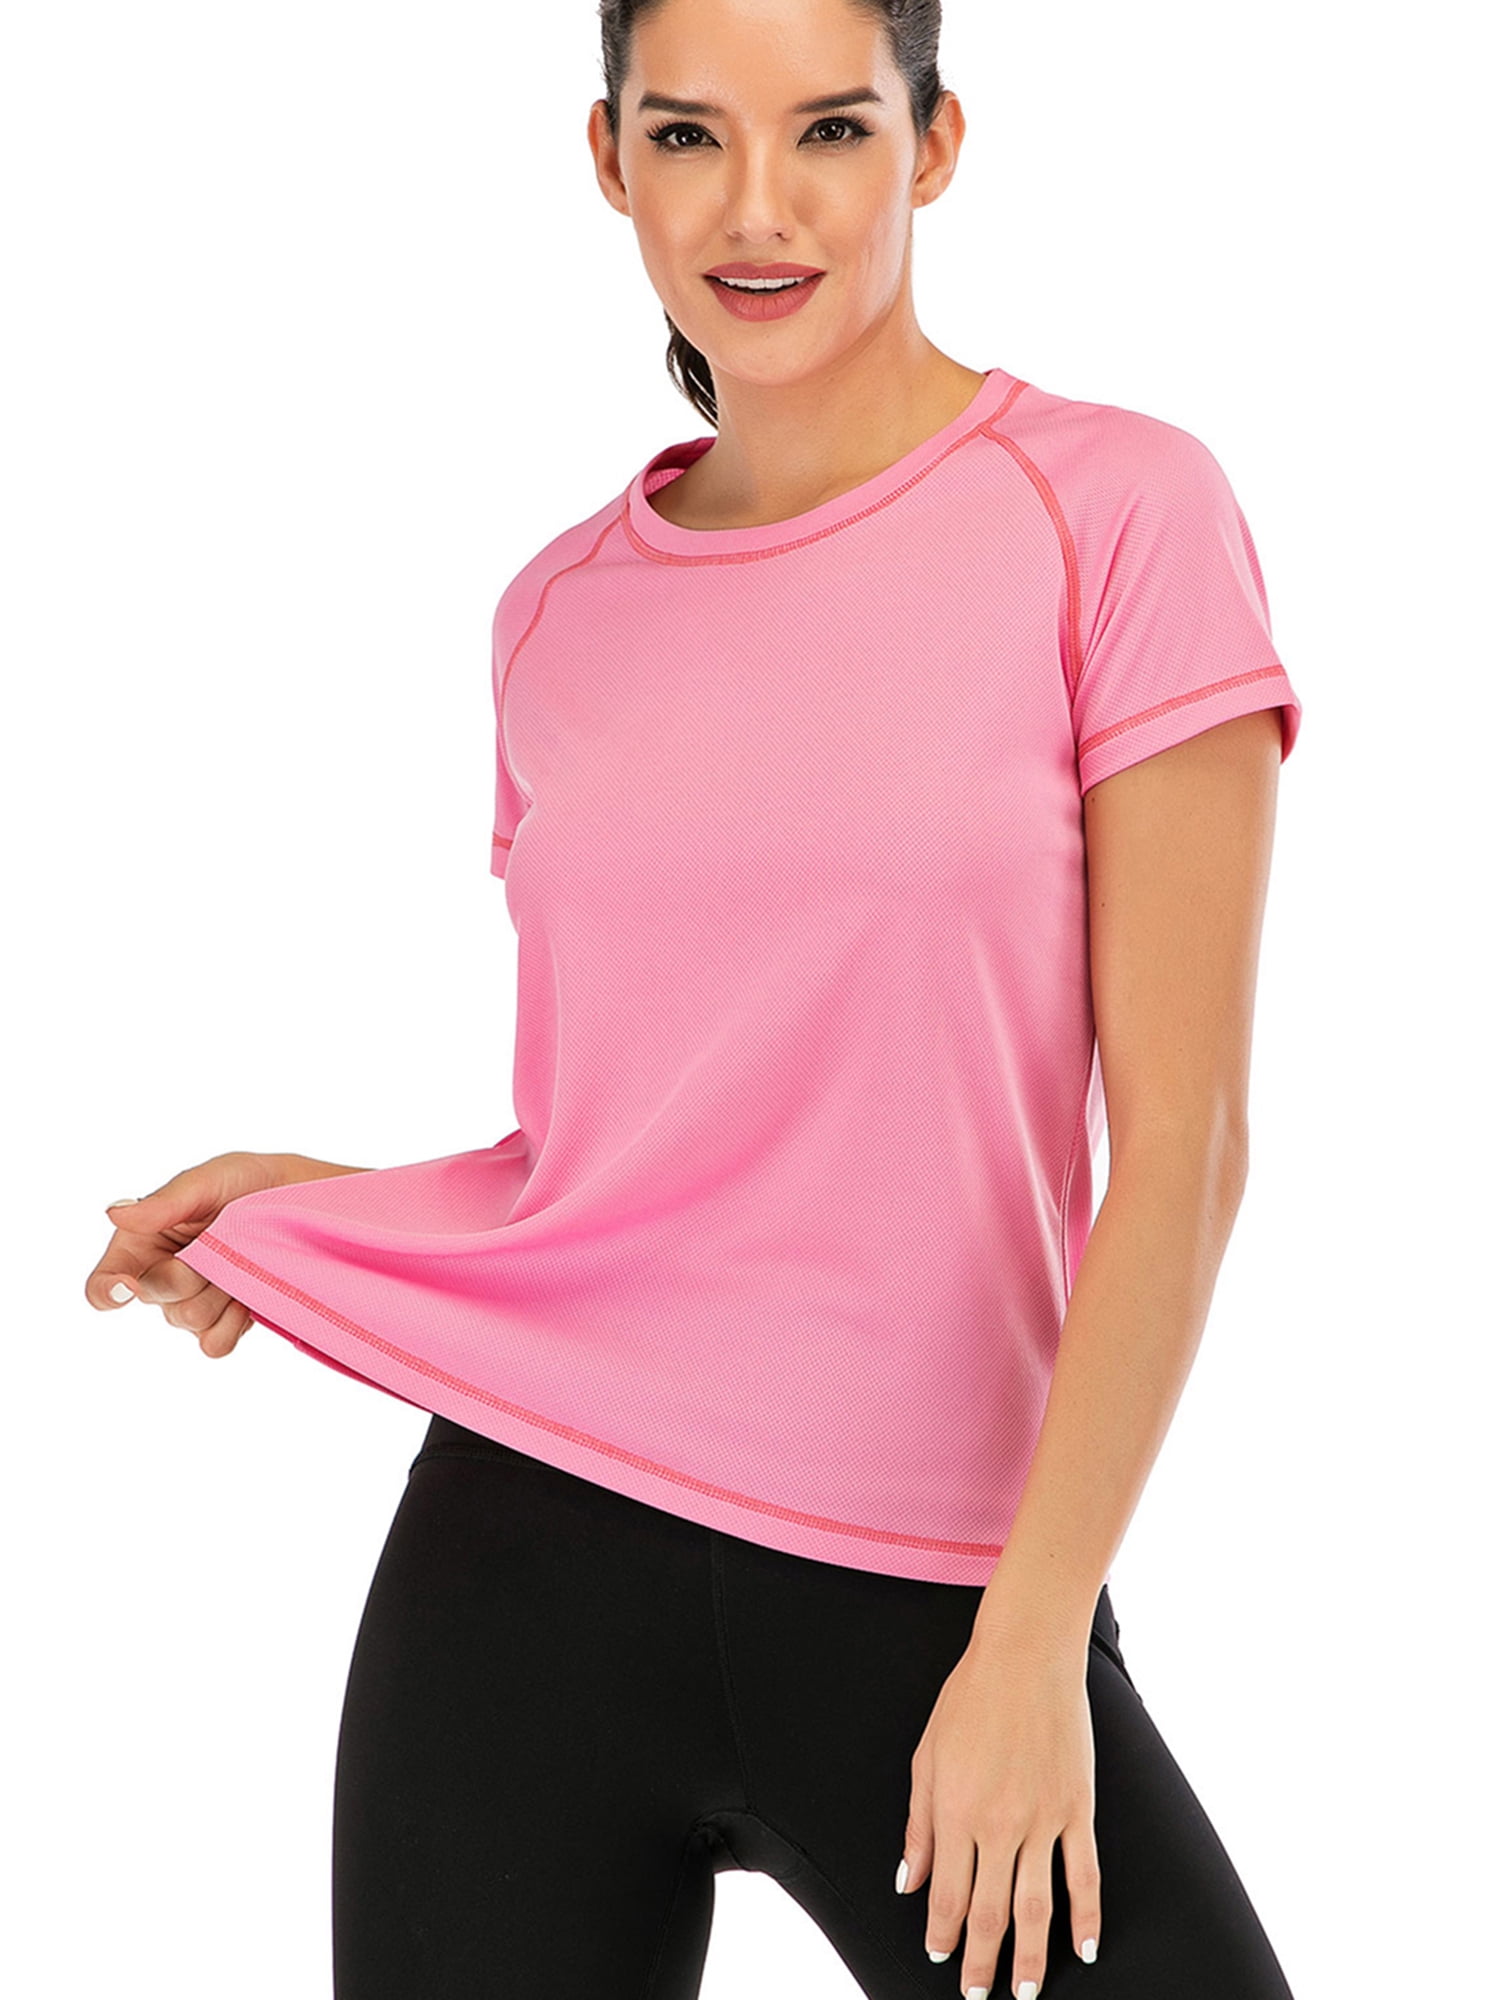 15 Minute Pink workout shirt 